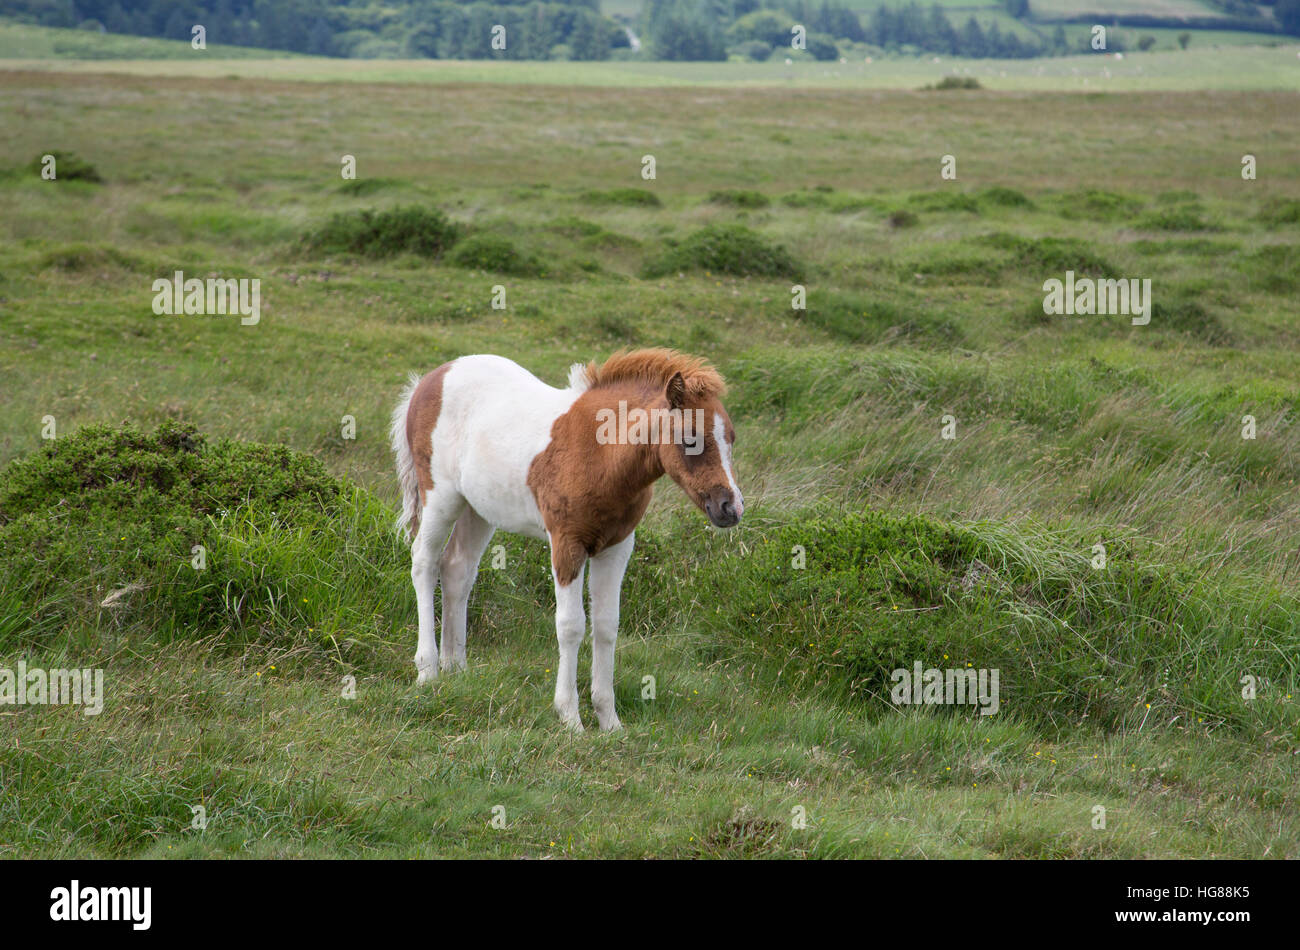 Dartmoor Pony, single foal standing on moorland, Dartmoor National Park, Devon, UK Stock Photo